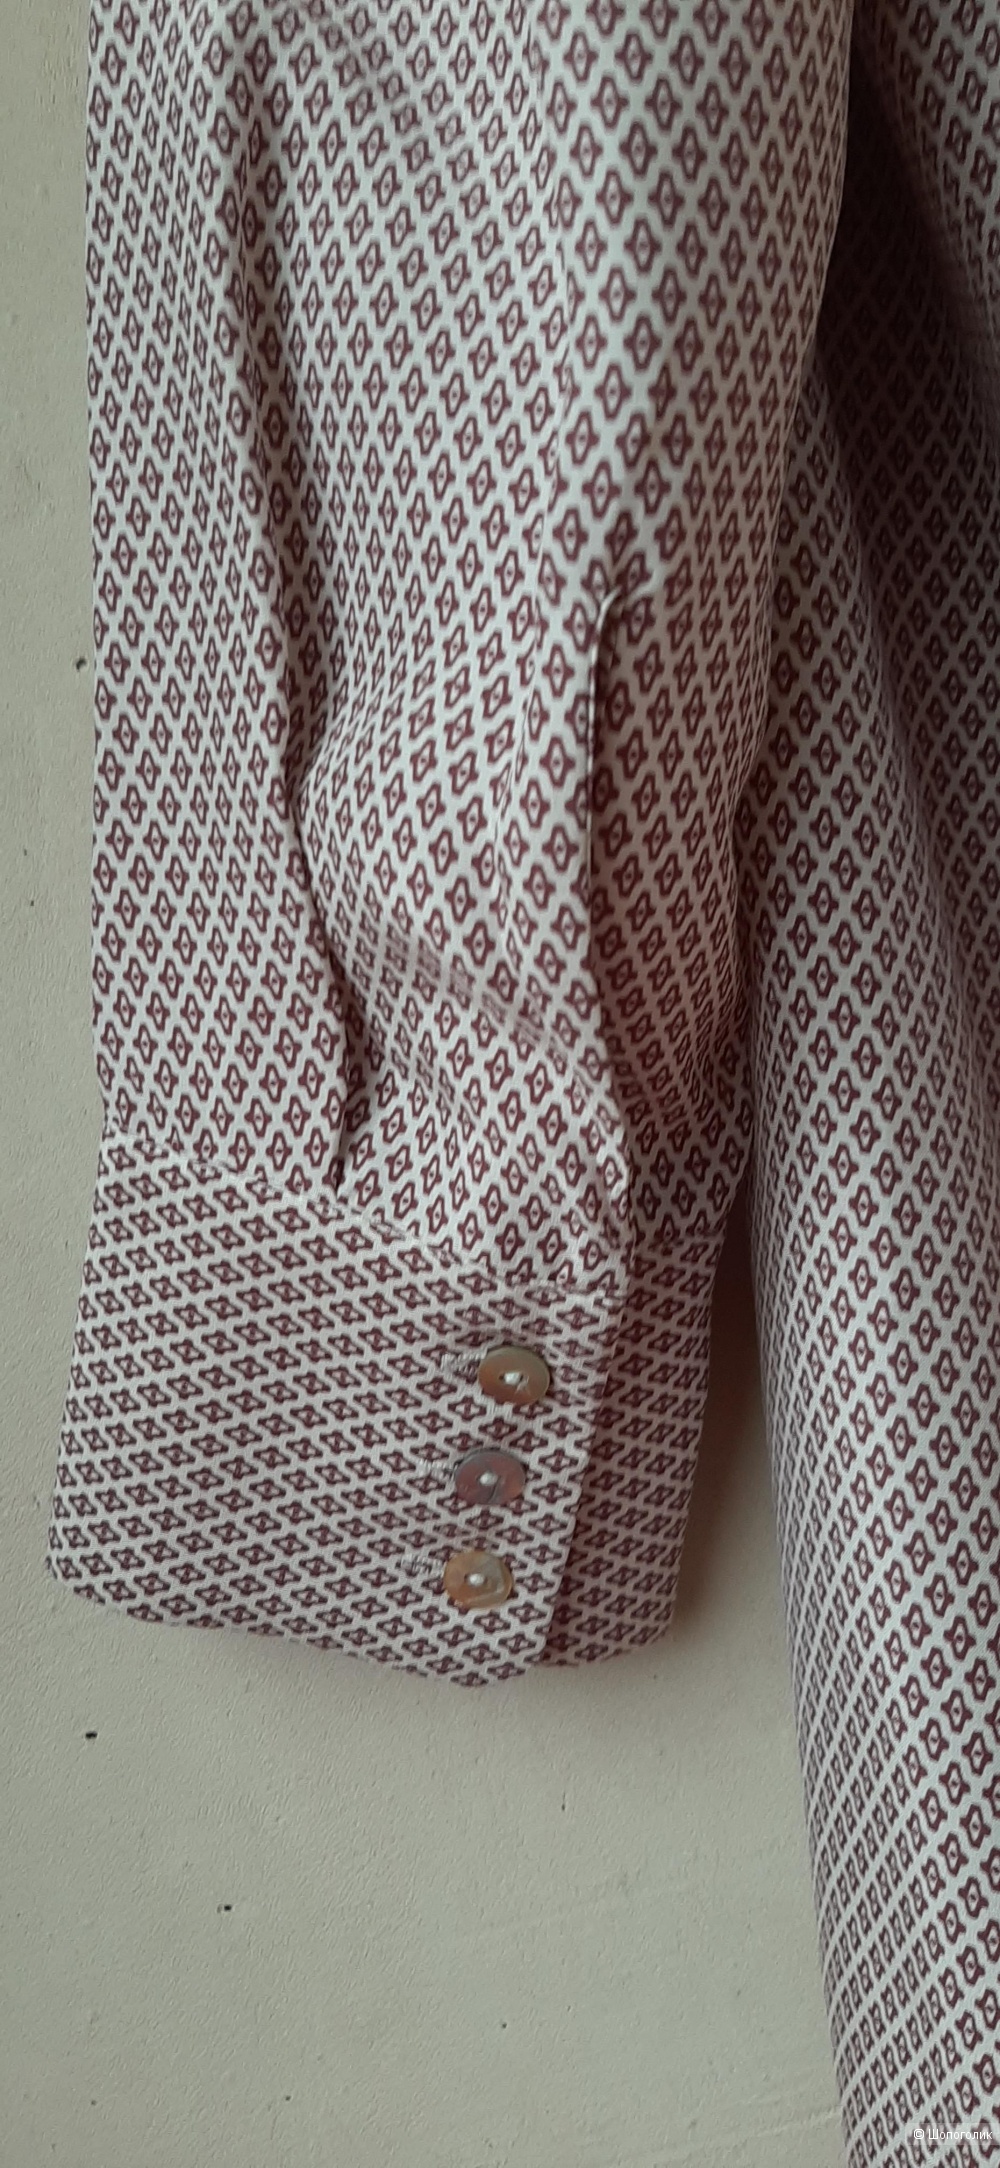 Шелковая блуза Stefanel, S-M